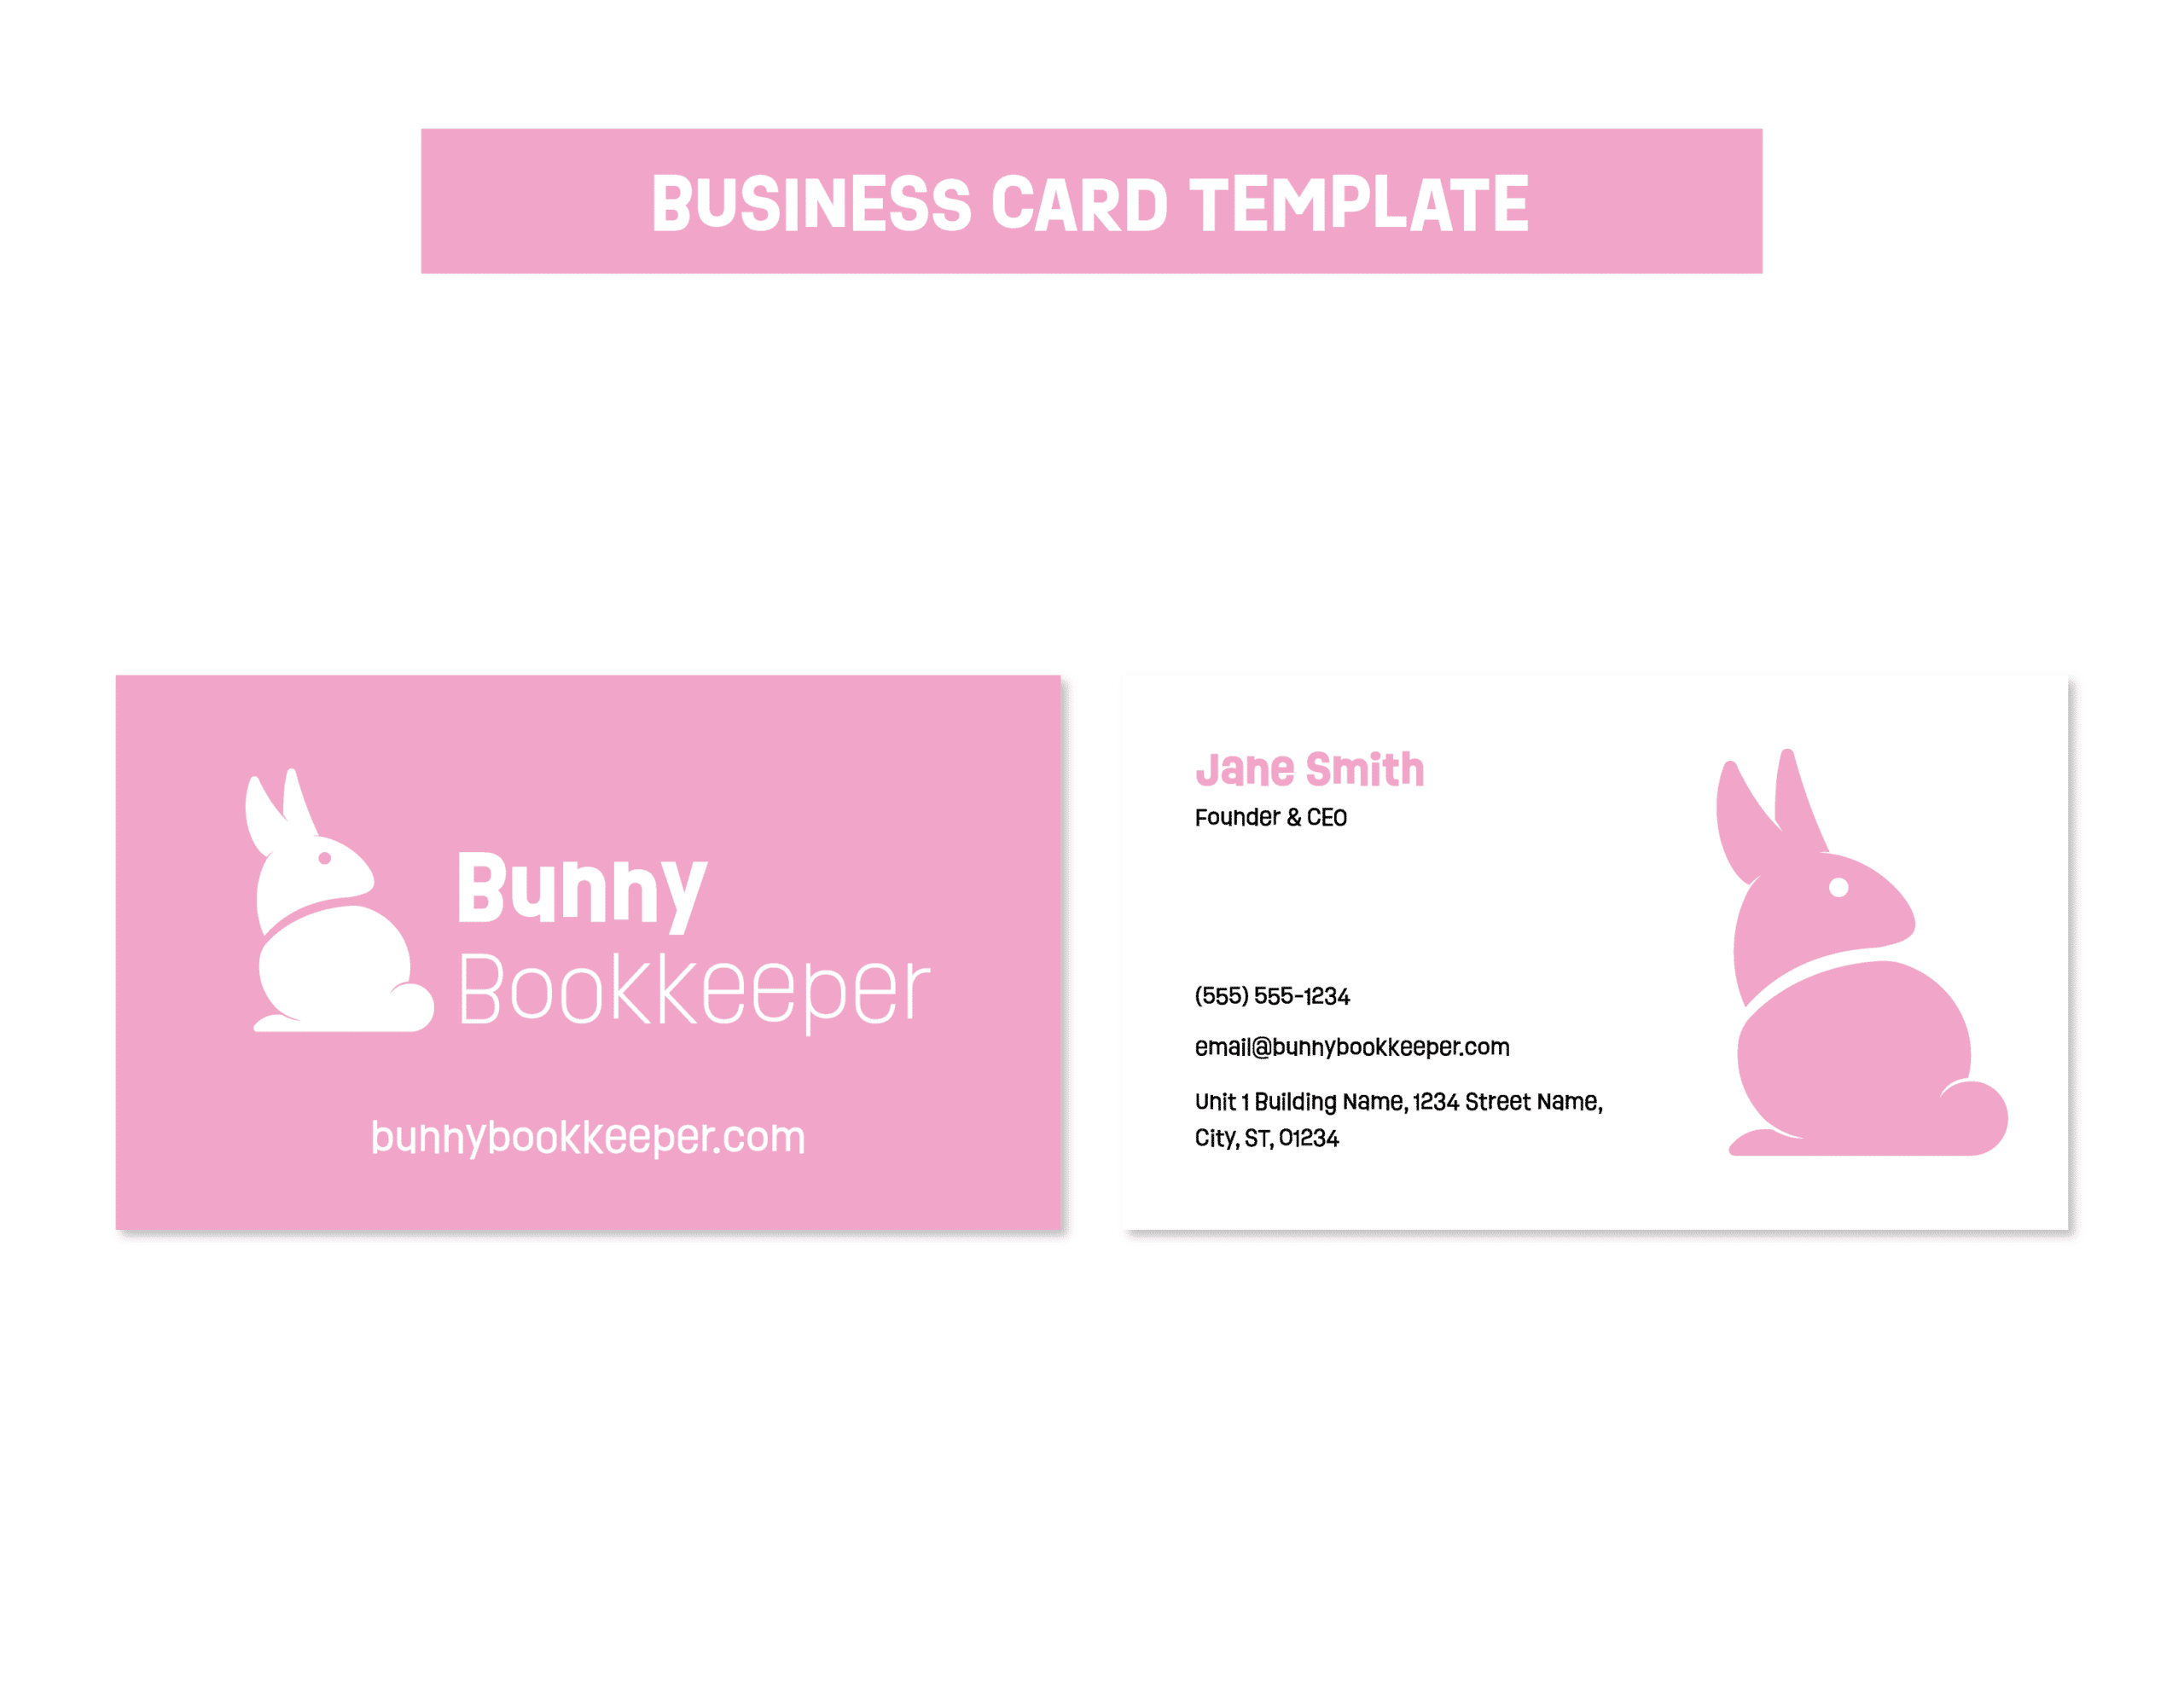 04BunnyBK_Business Card Template